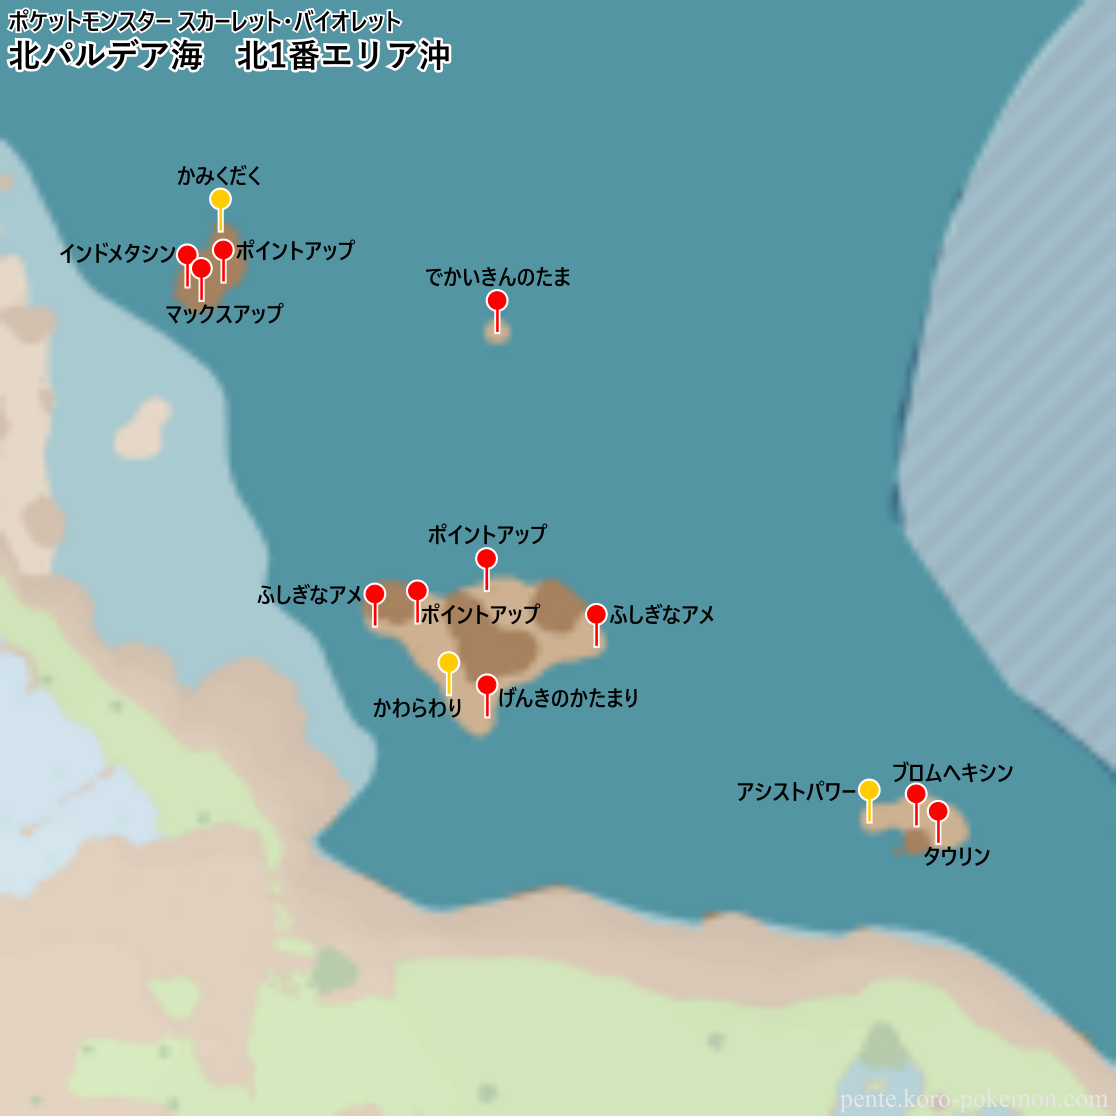 ポケモンスカーレット・バイオレット 北パルデア海 北1番エリア沖 マップ